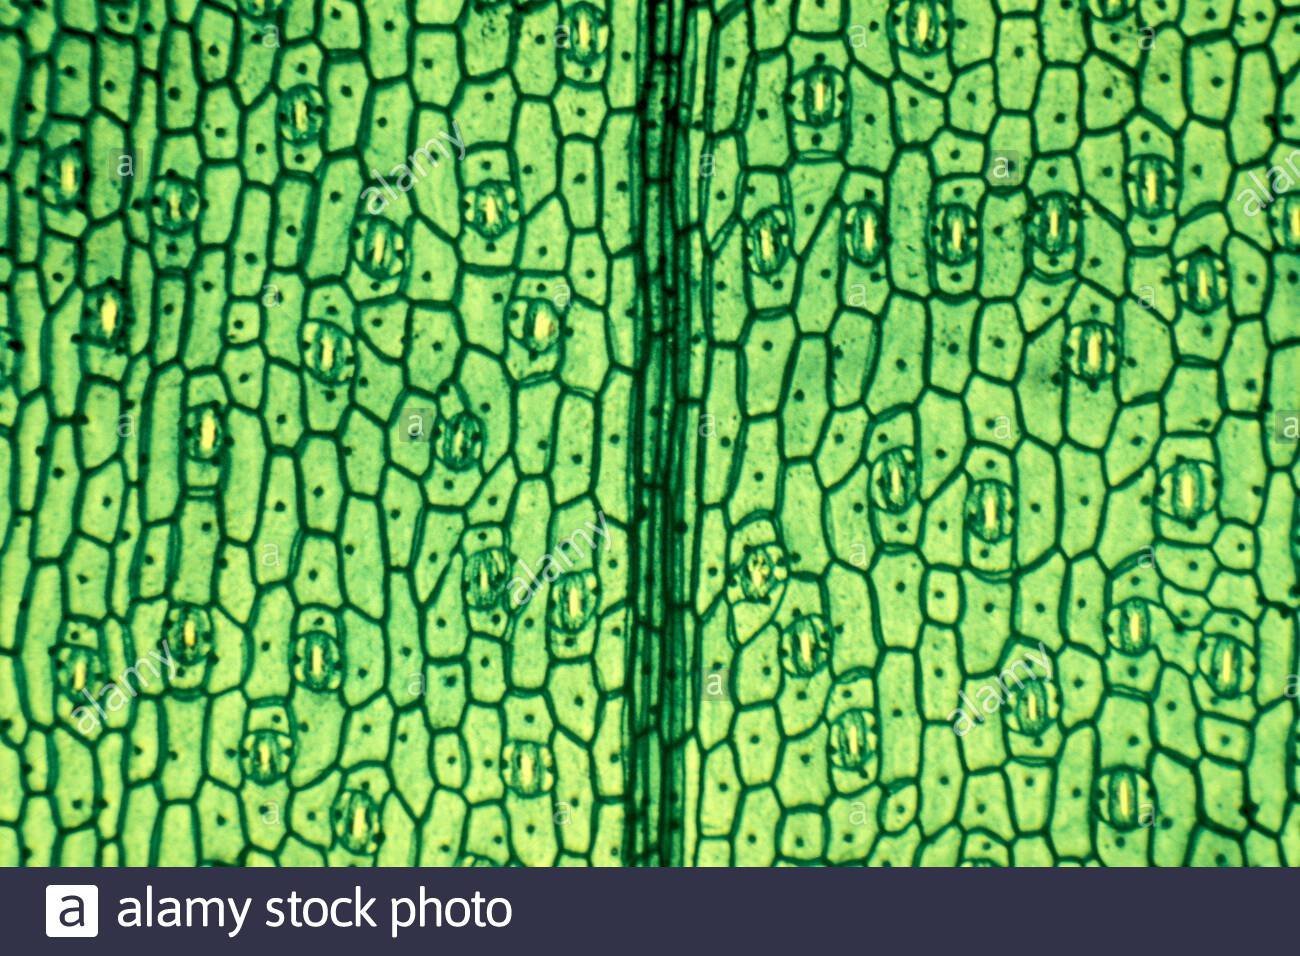 Кожица традесканции под микроскопом. Ткани растений эпидерма. Покровная ткань кожица листа. Клетки эпидермиса листа традесканции. Микропрепарат эпидермис листа герани.